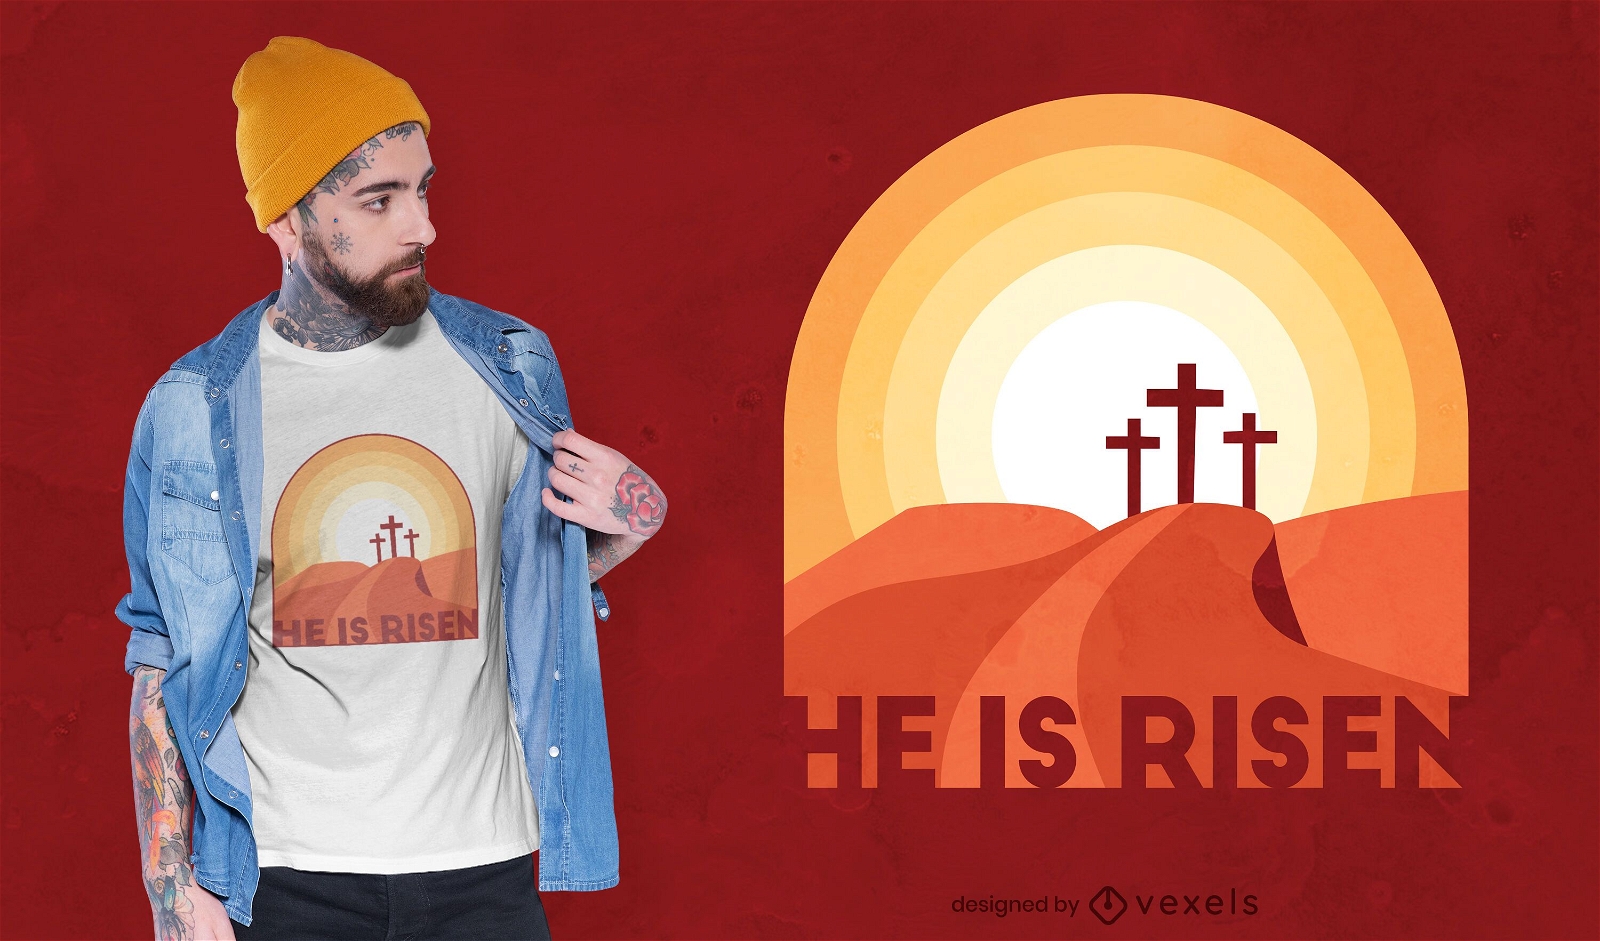 He is risen t-shirt design